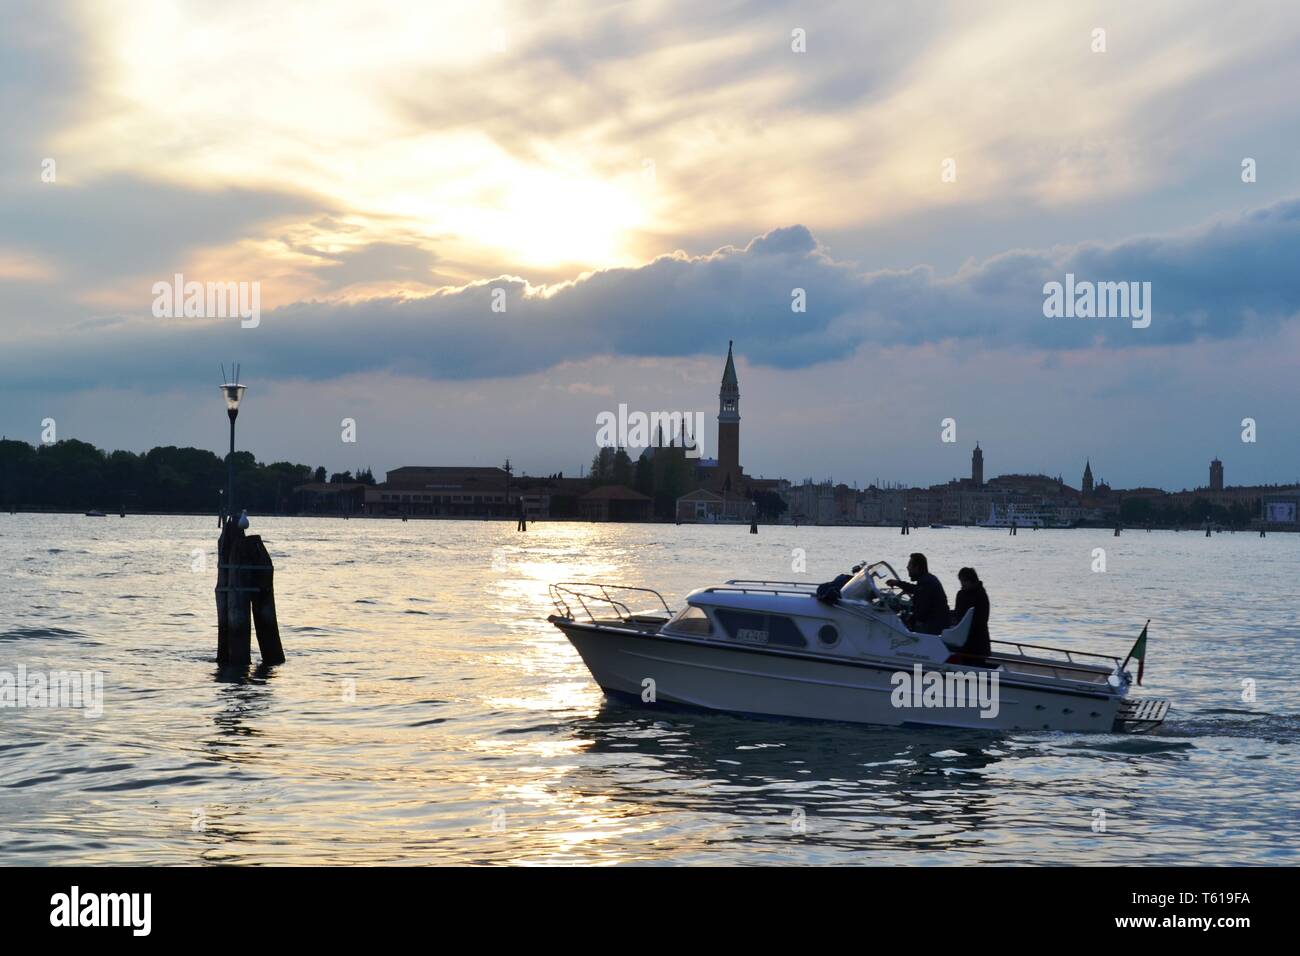 Italie/Venise - 20 Avril 2014 : vue panoramique de magnifique coucher de soleil sur la lagune de Venise, Cloudscape, paysage urbain de l'île de San Giorgio Maggiore Banque D'Images